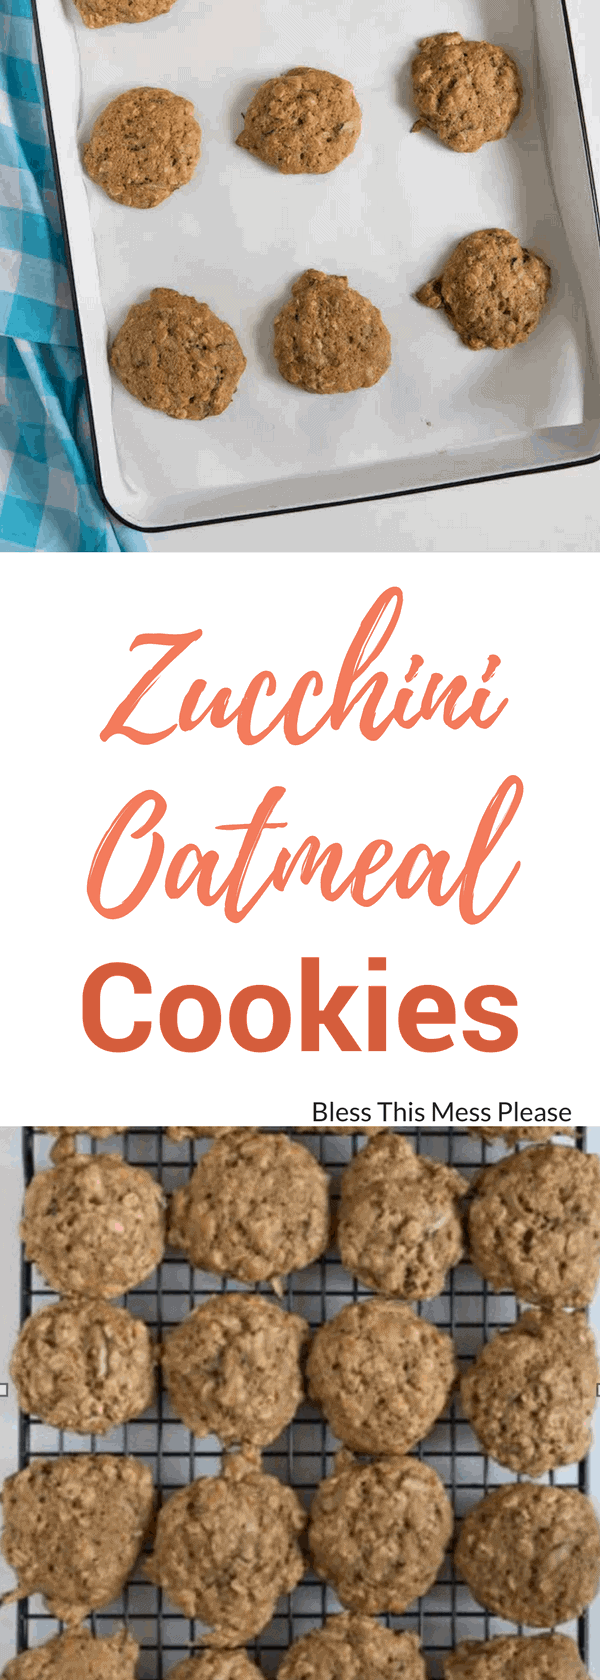 Zucchini Oatmeal Cookies